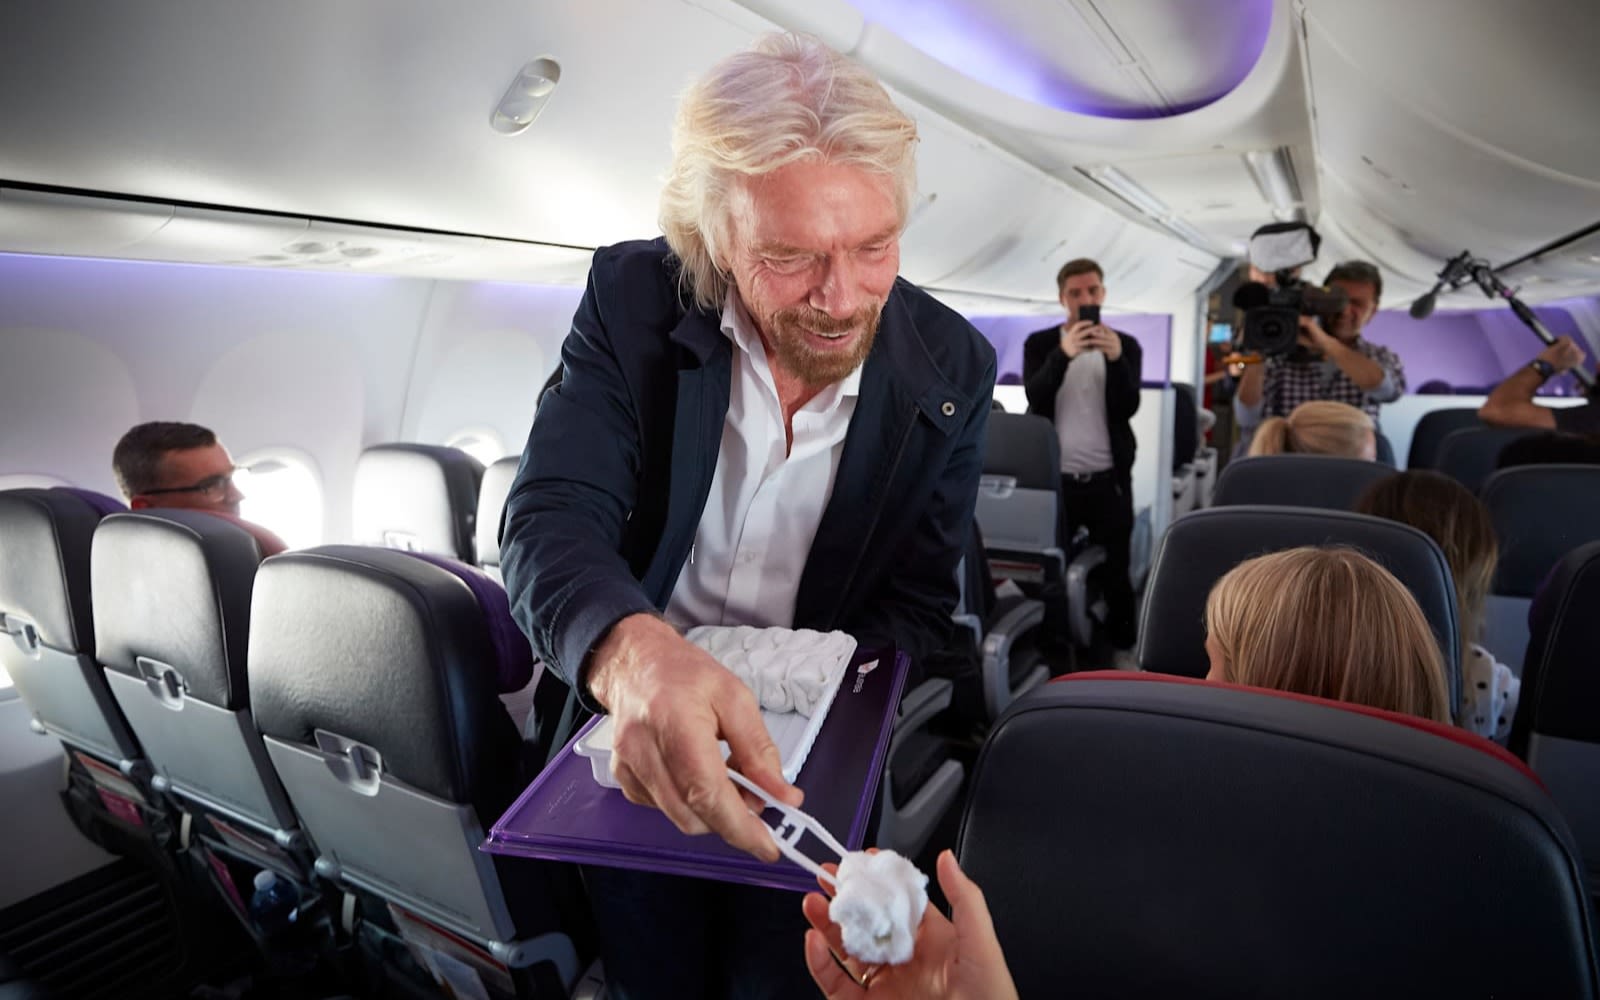 Richard Branson serving hot towels on Virgin Australia's meditation flight in 2018